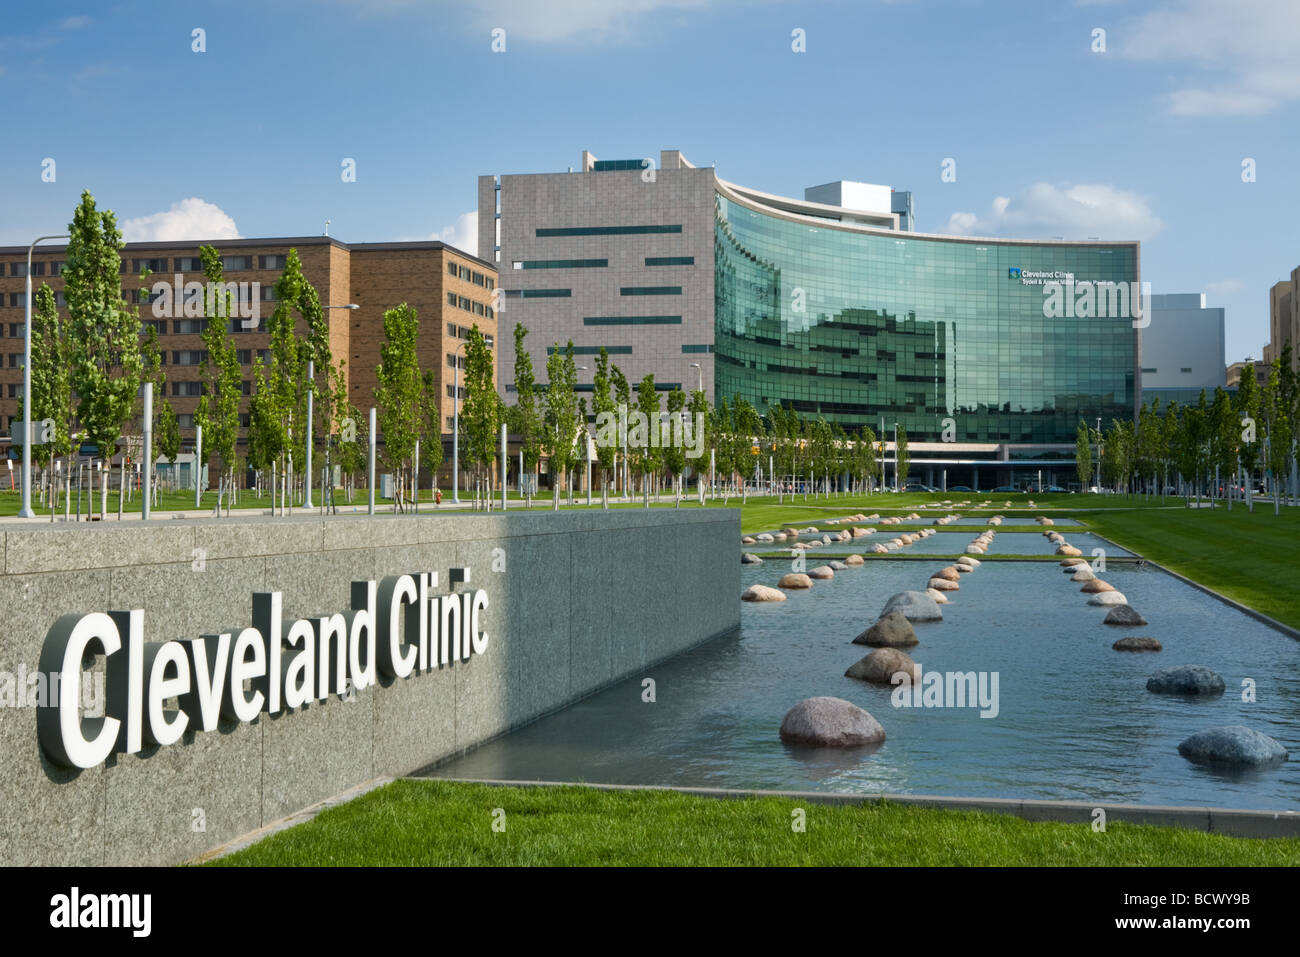 La Cleveland Clinic, un excellent hôpital de recherche à Cleveland, Ohio, États-Unis. Banque D'Images